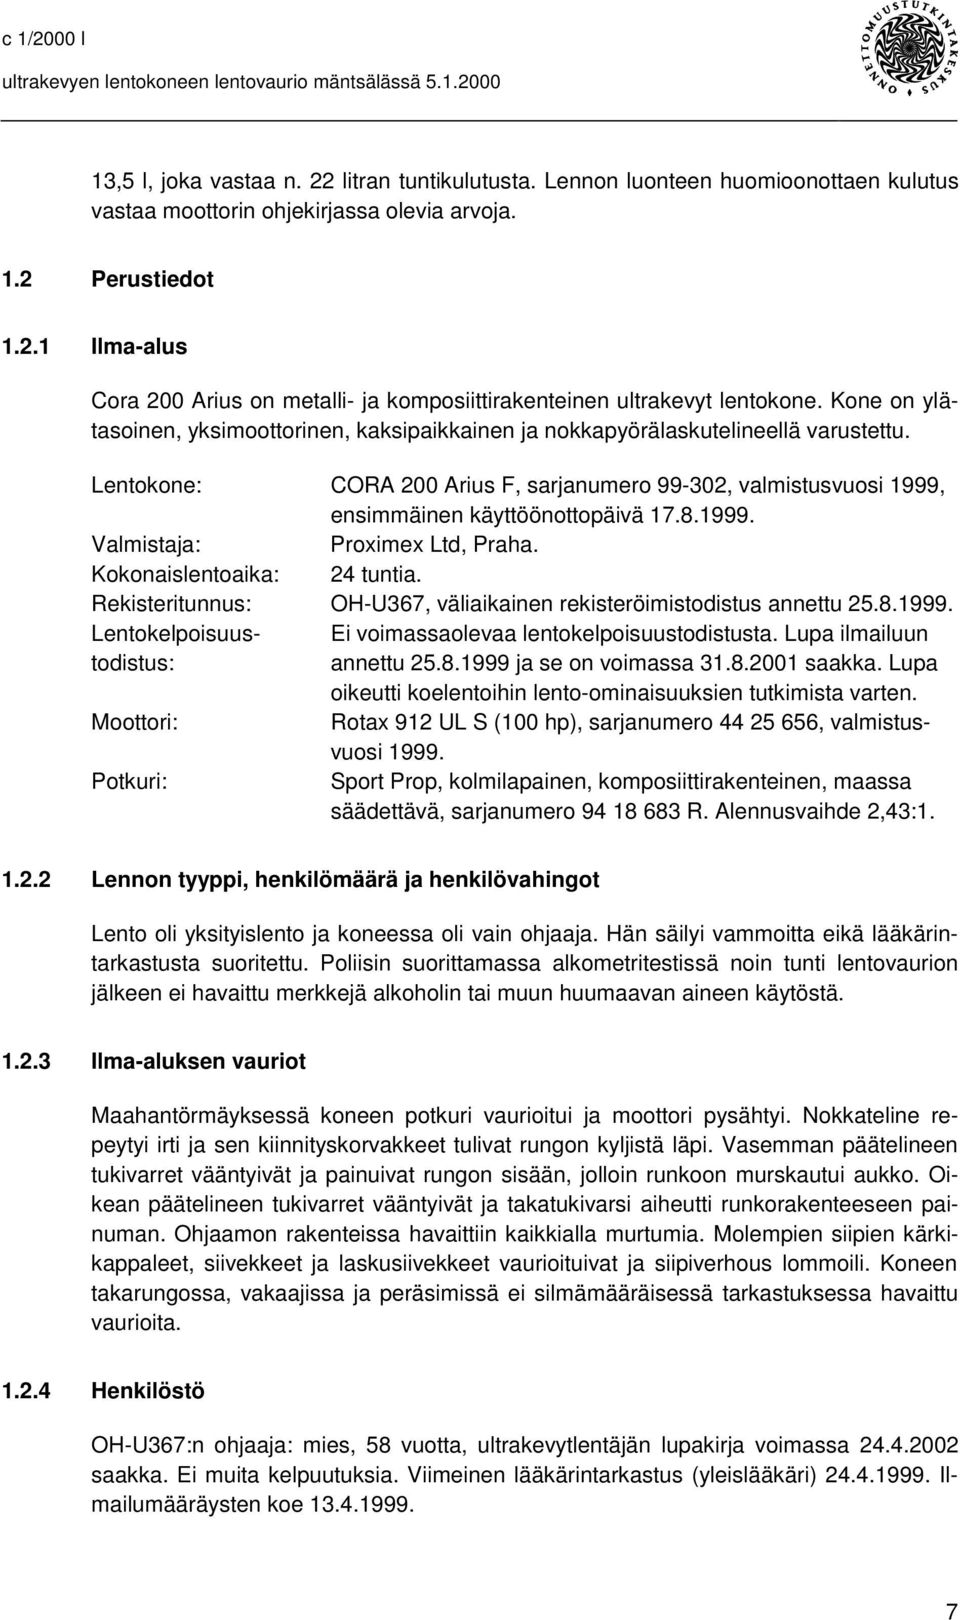 1999. Valmistaja: Proximex Ltd, Praha. Kokonaislentoaika: 24 tuntia. Rekisteritunnus: OH-U367, väliaikainen rekisteröimistodistus annettu 25.8.1999. Lentokelpoisuus- Ei voimassaolevaa lentokelpoisuustodistusta.